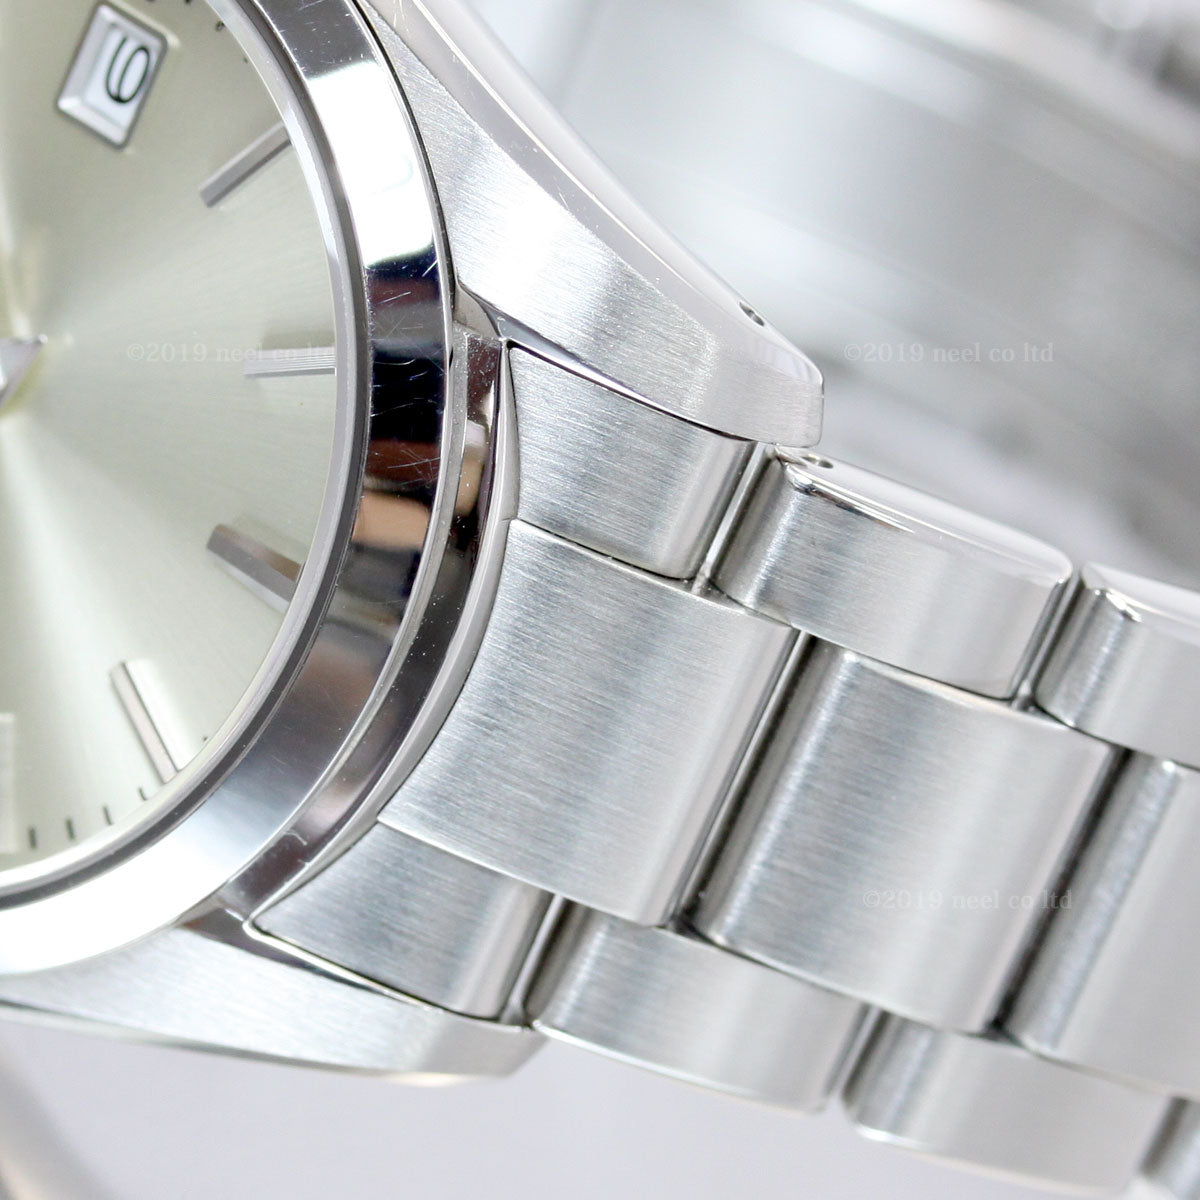 グランドセイコー GRAND SEIKO 腕時計 メンズ レディース ペアモデル Heritage Collection SBGX263 STGF265